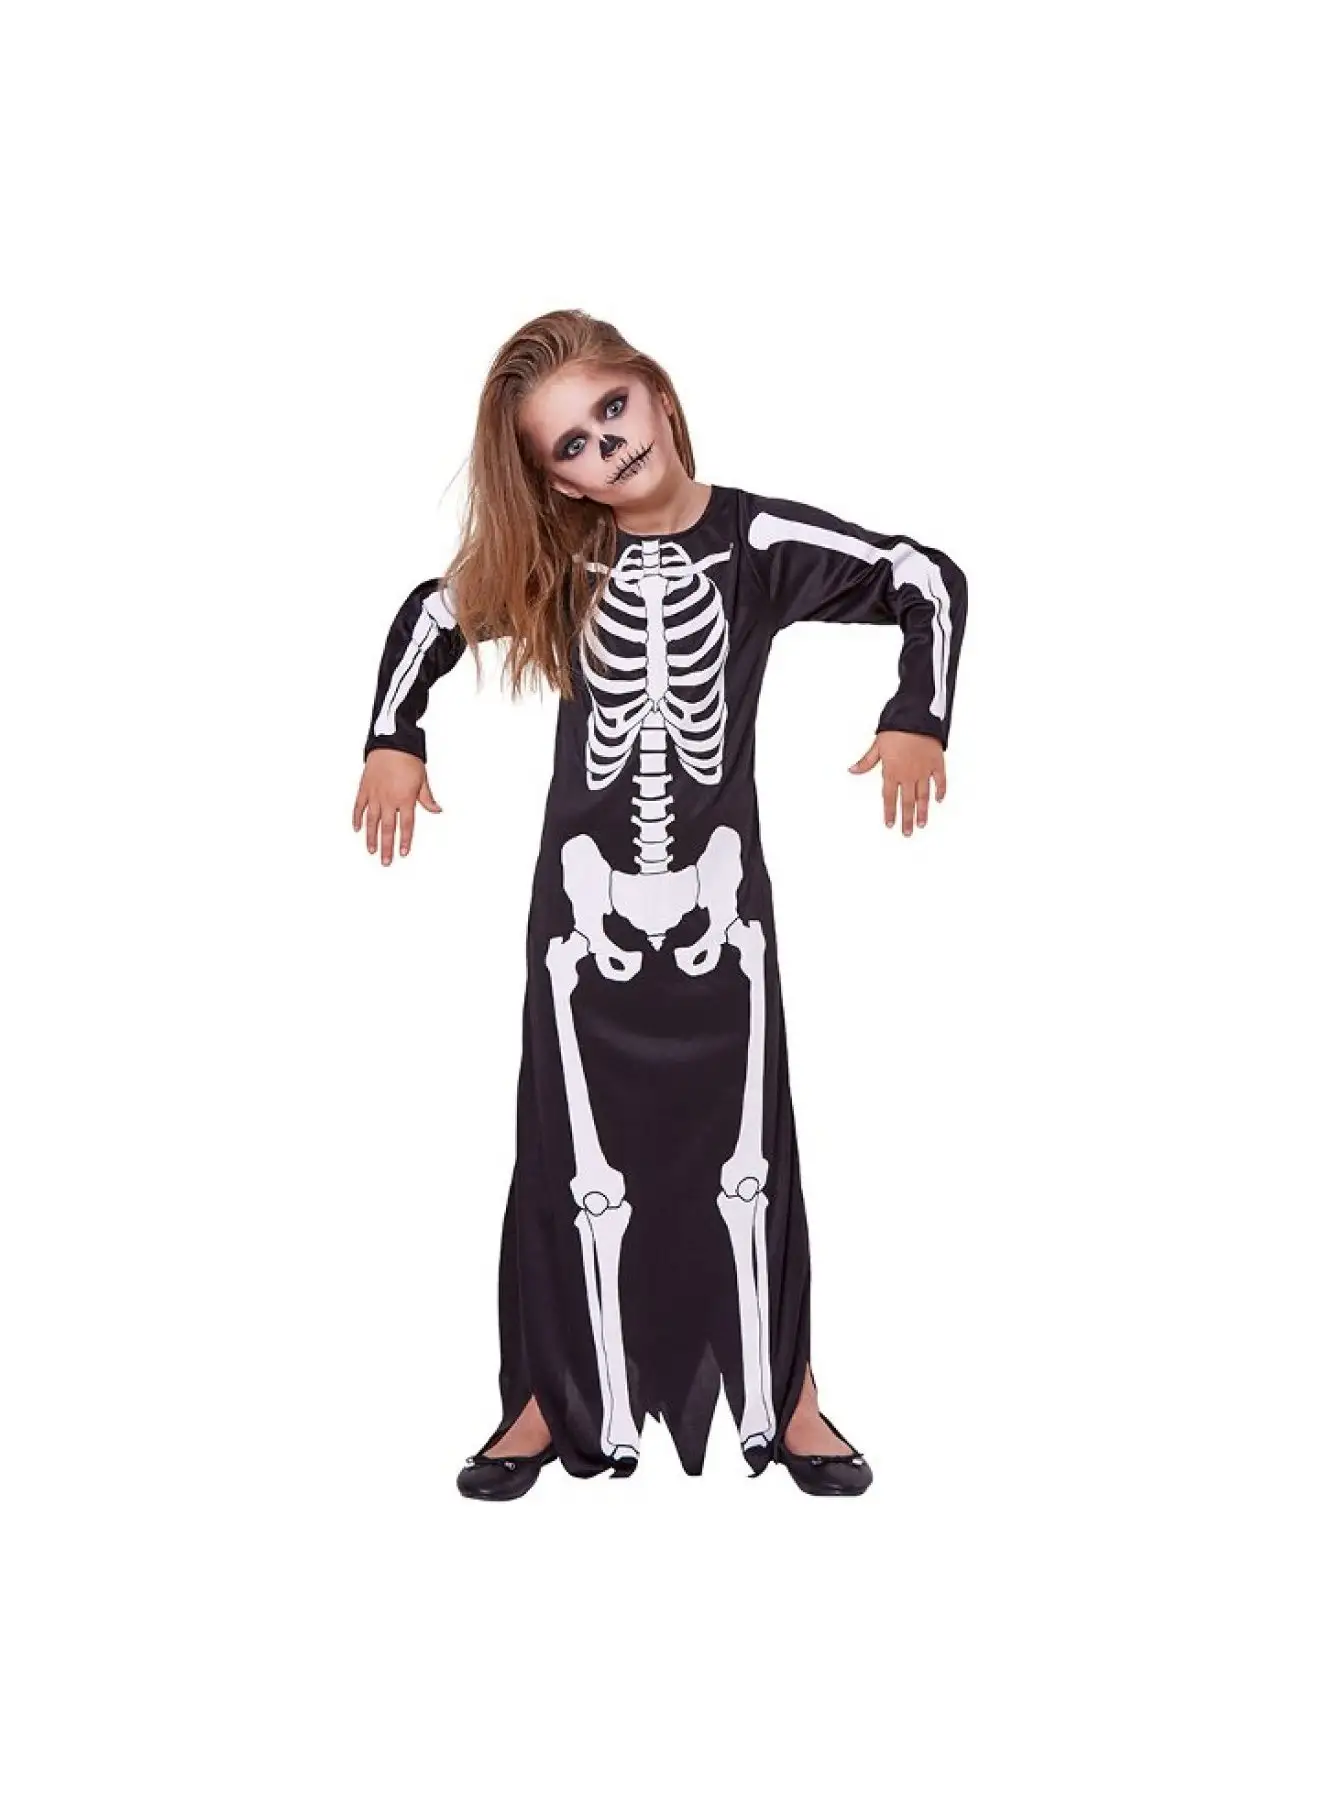 MAD TOYS Skeleton Dress Kids Halloween Costume